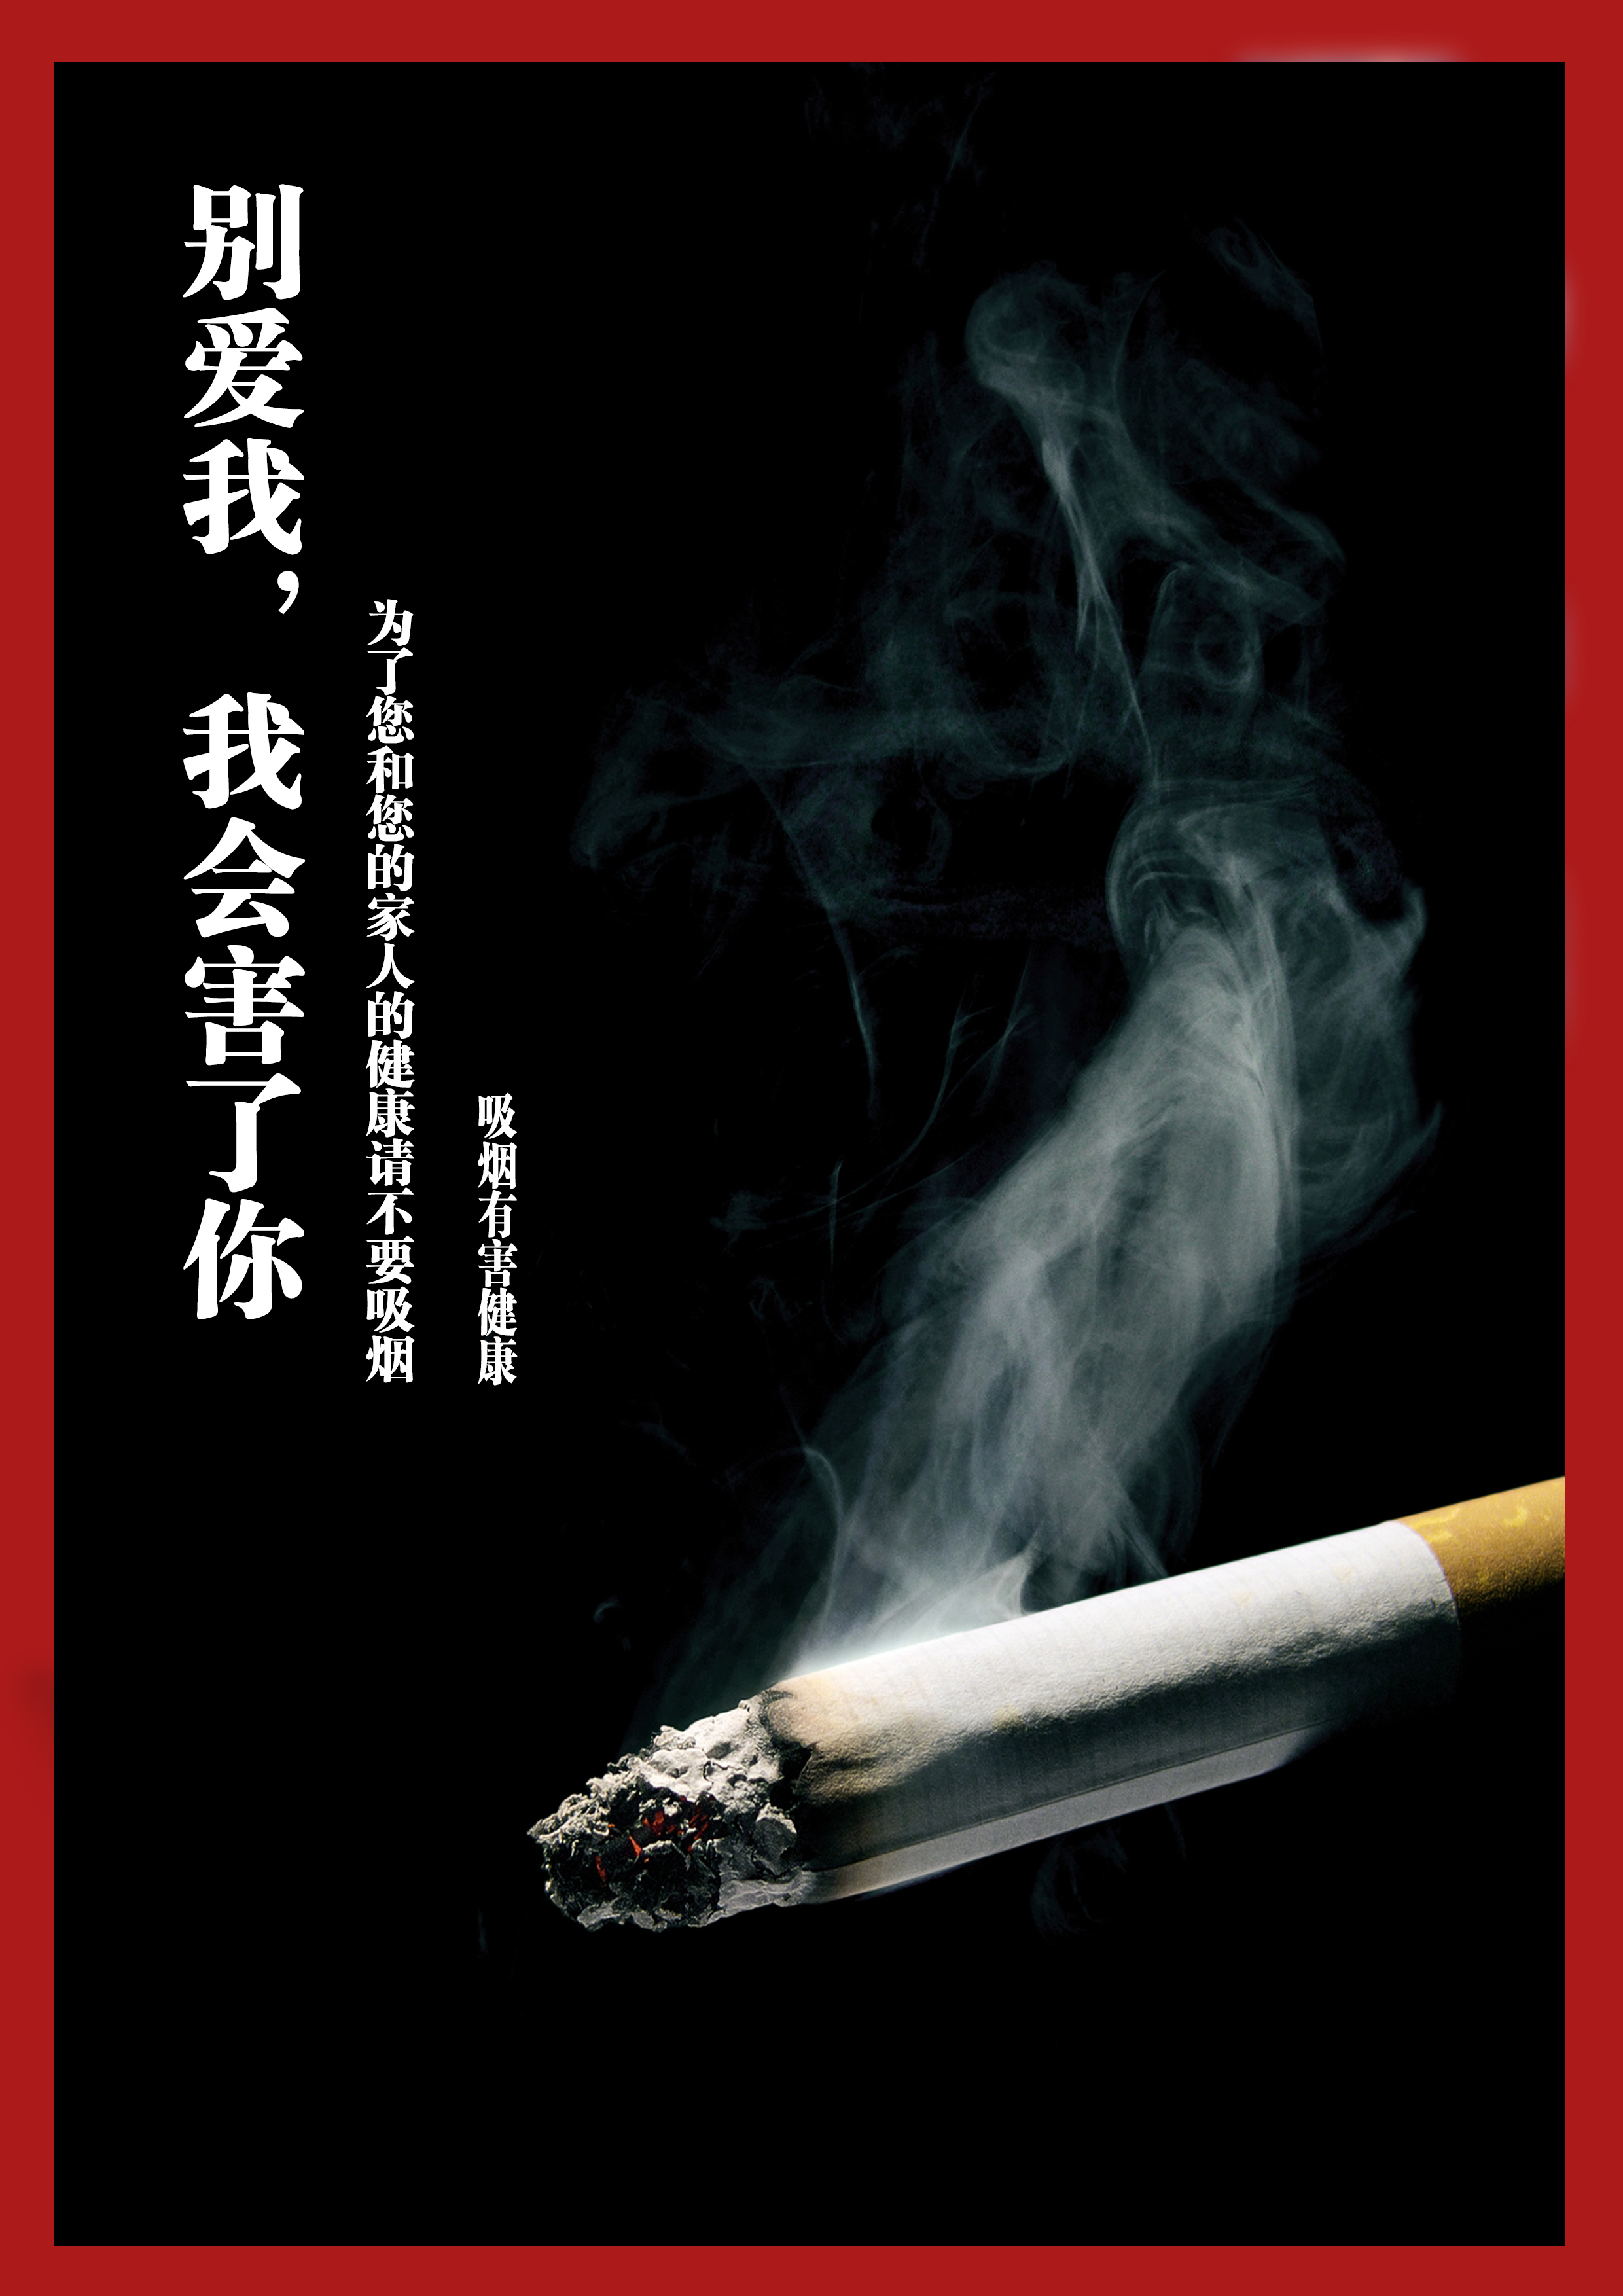 吸烟有害健康RGB-华讯广告.jpg